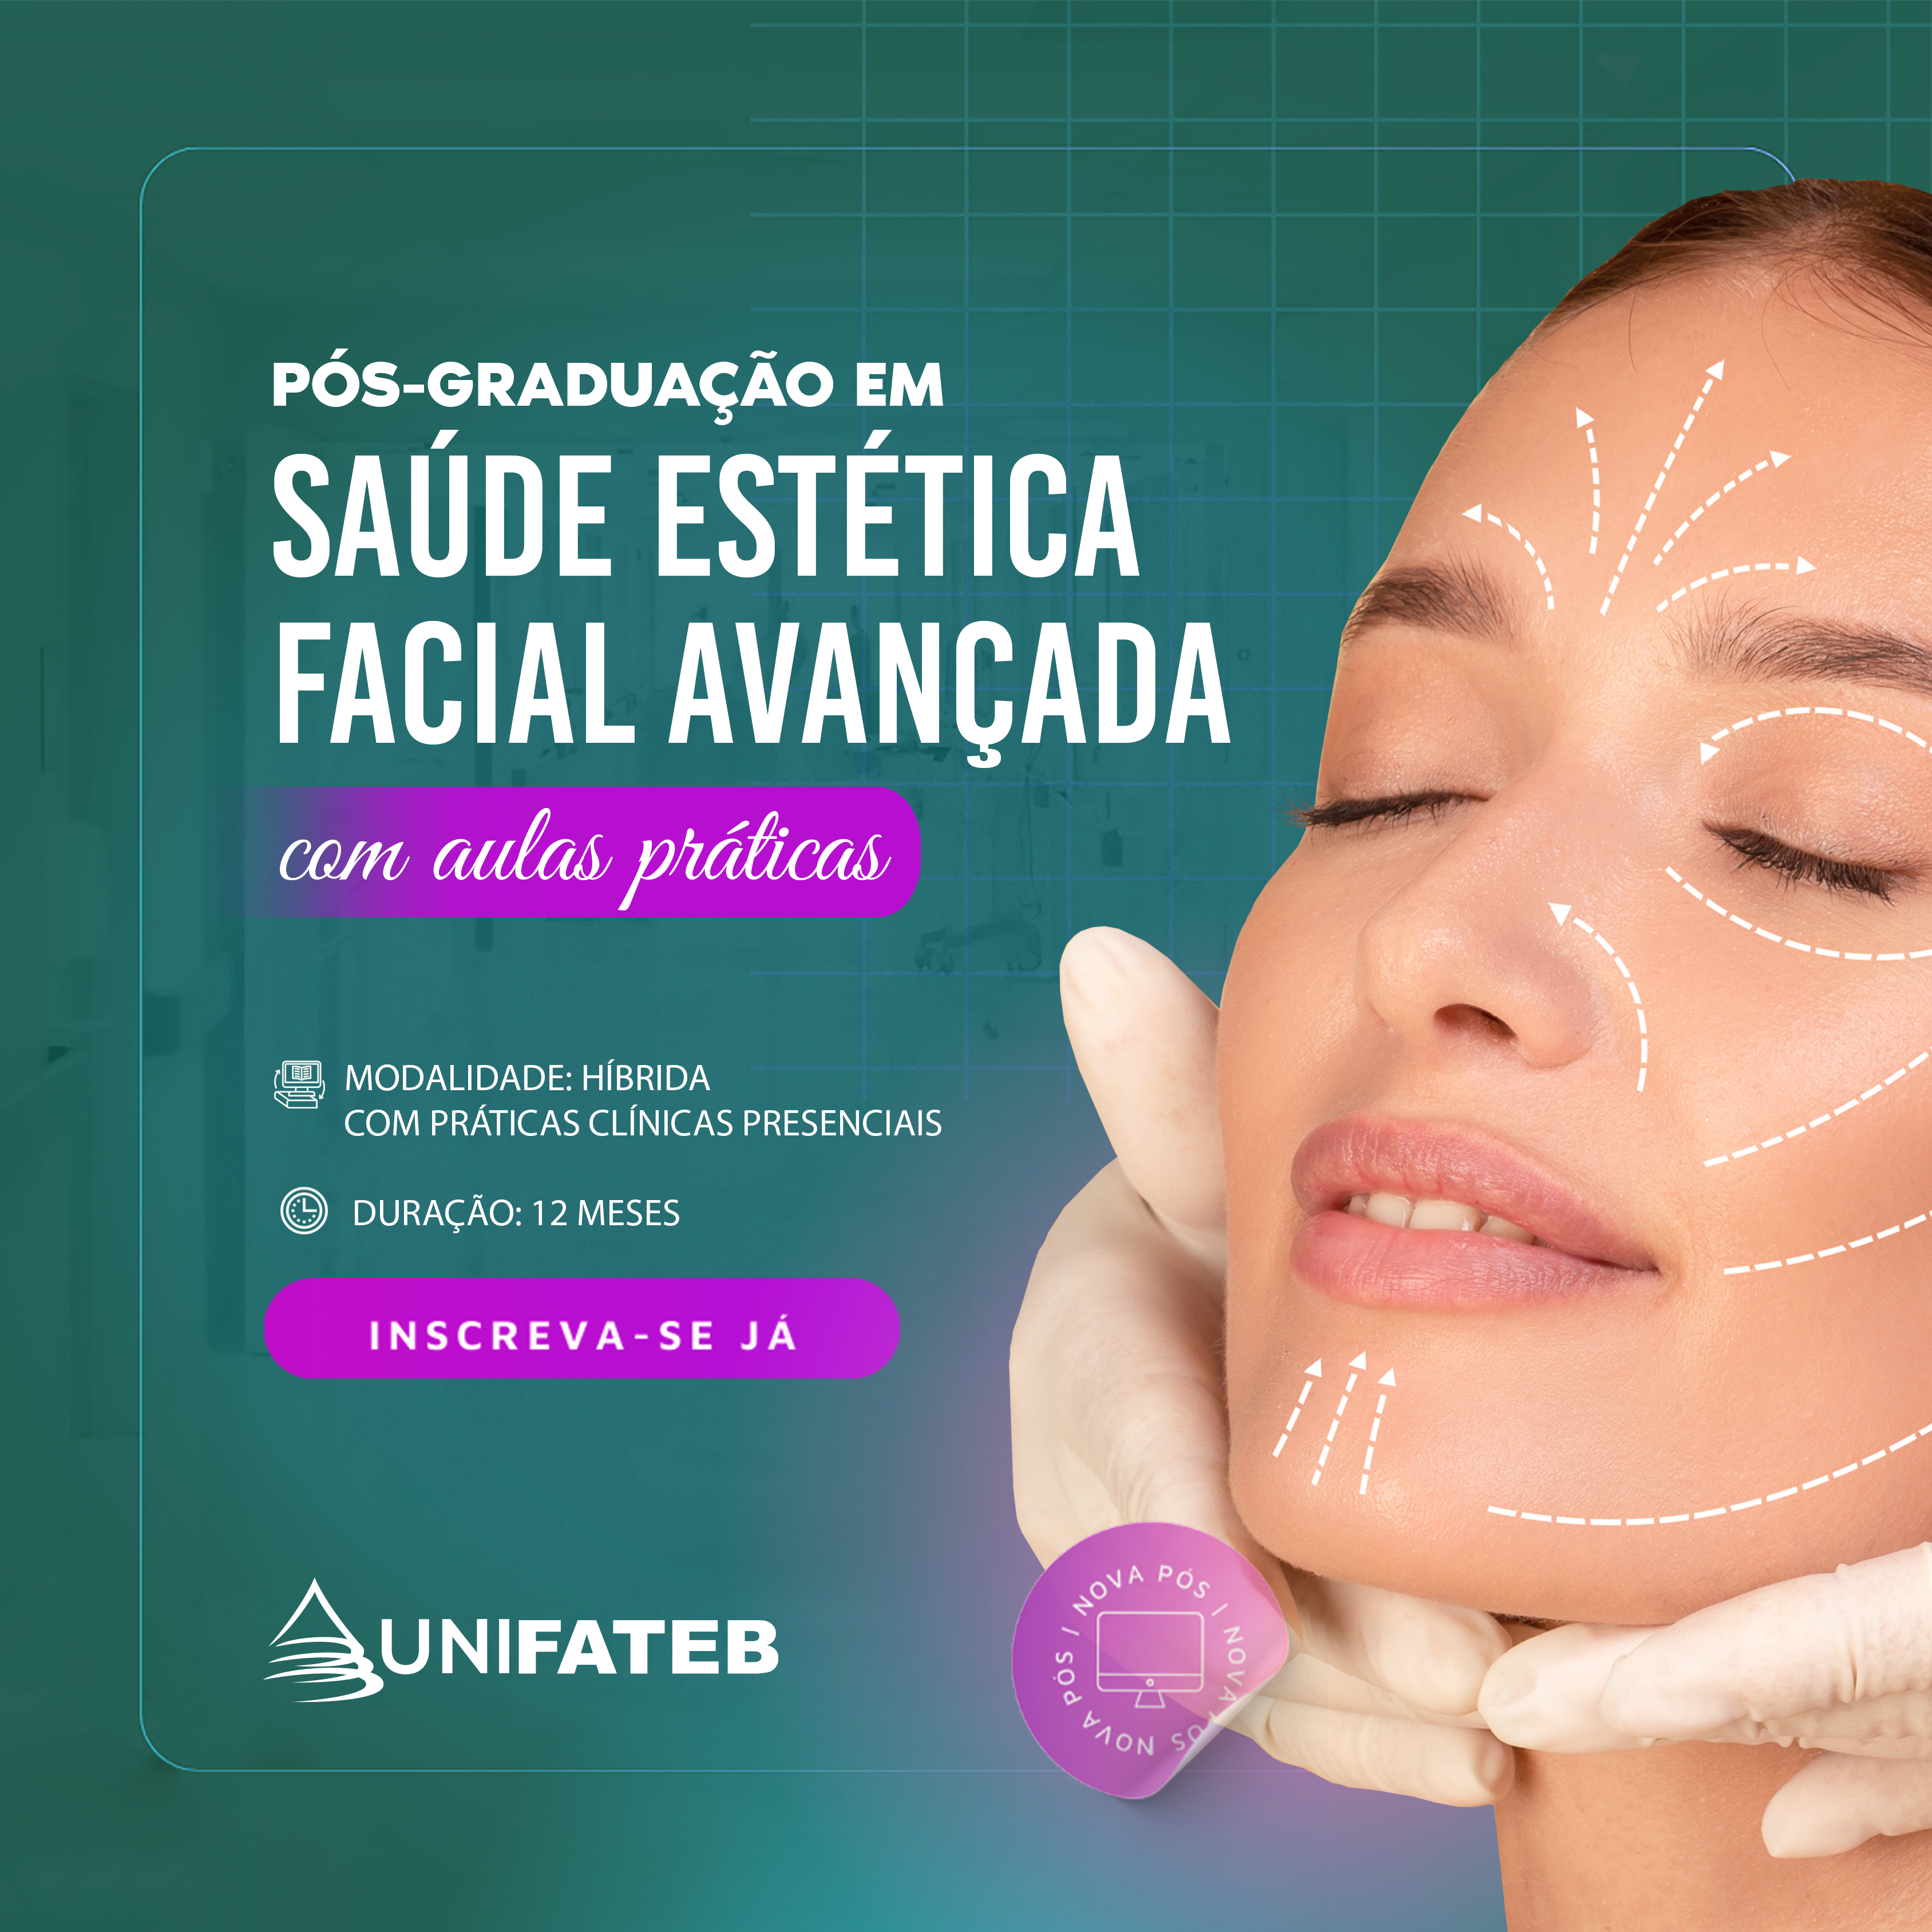 Pós-graduação em Saúde Estética Facial Avançada 💚 - UNIFATEB